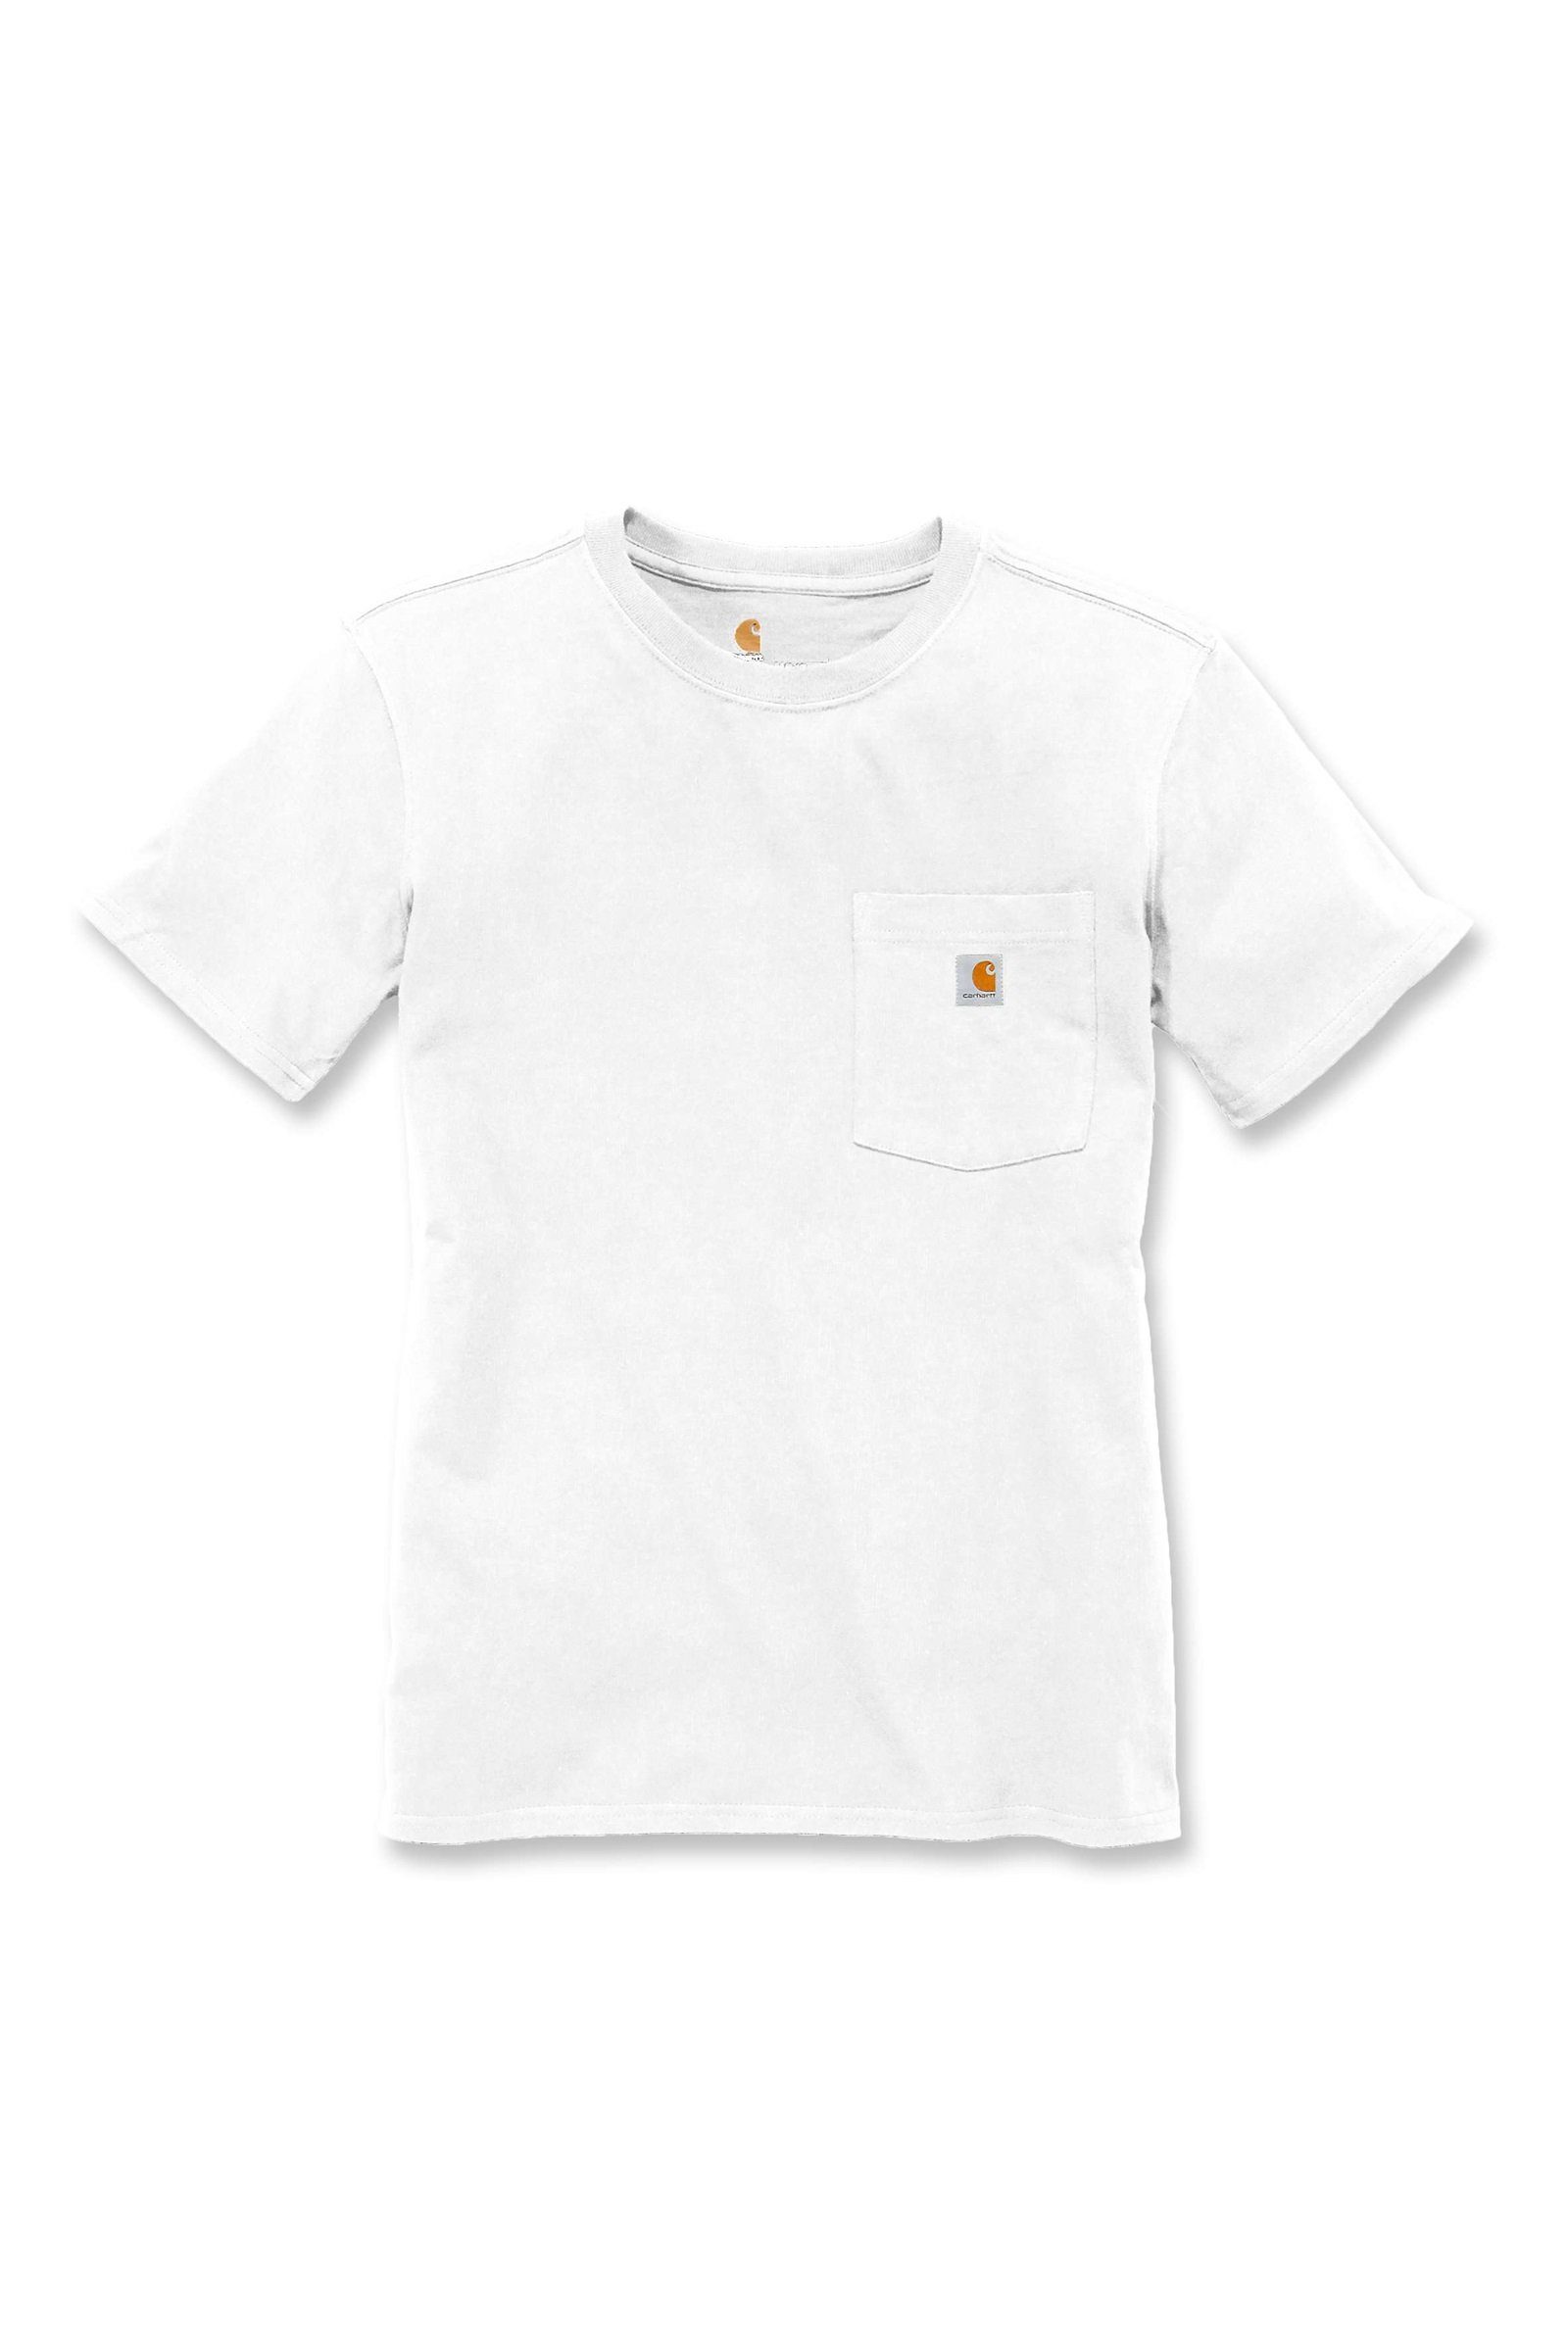 T-Shirt Carhartt Fit Carhartt Adult Damen Pocket white Short-Sleeve T-Shirt Heavyweight Loose